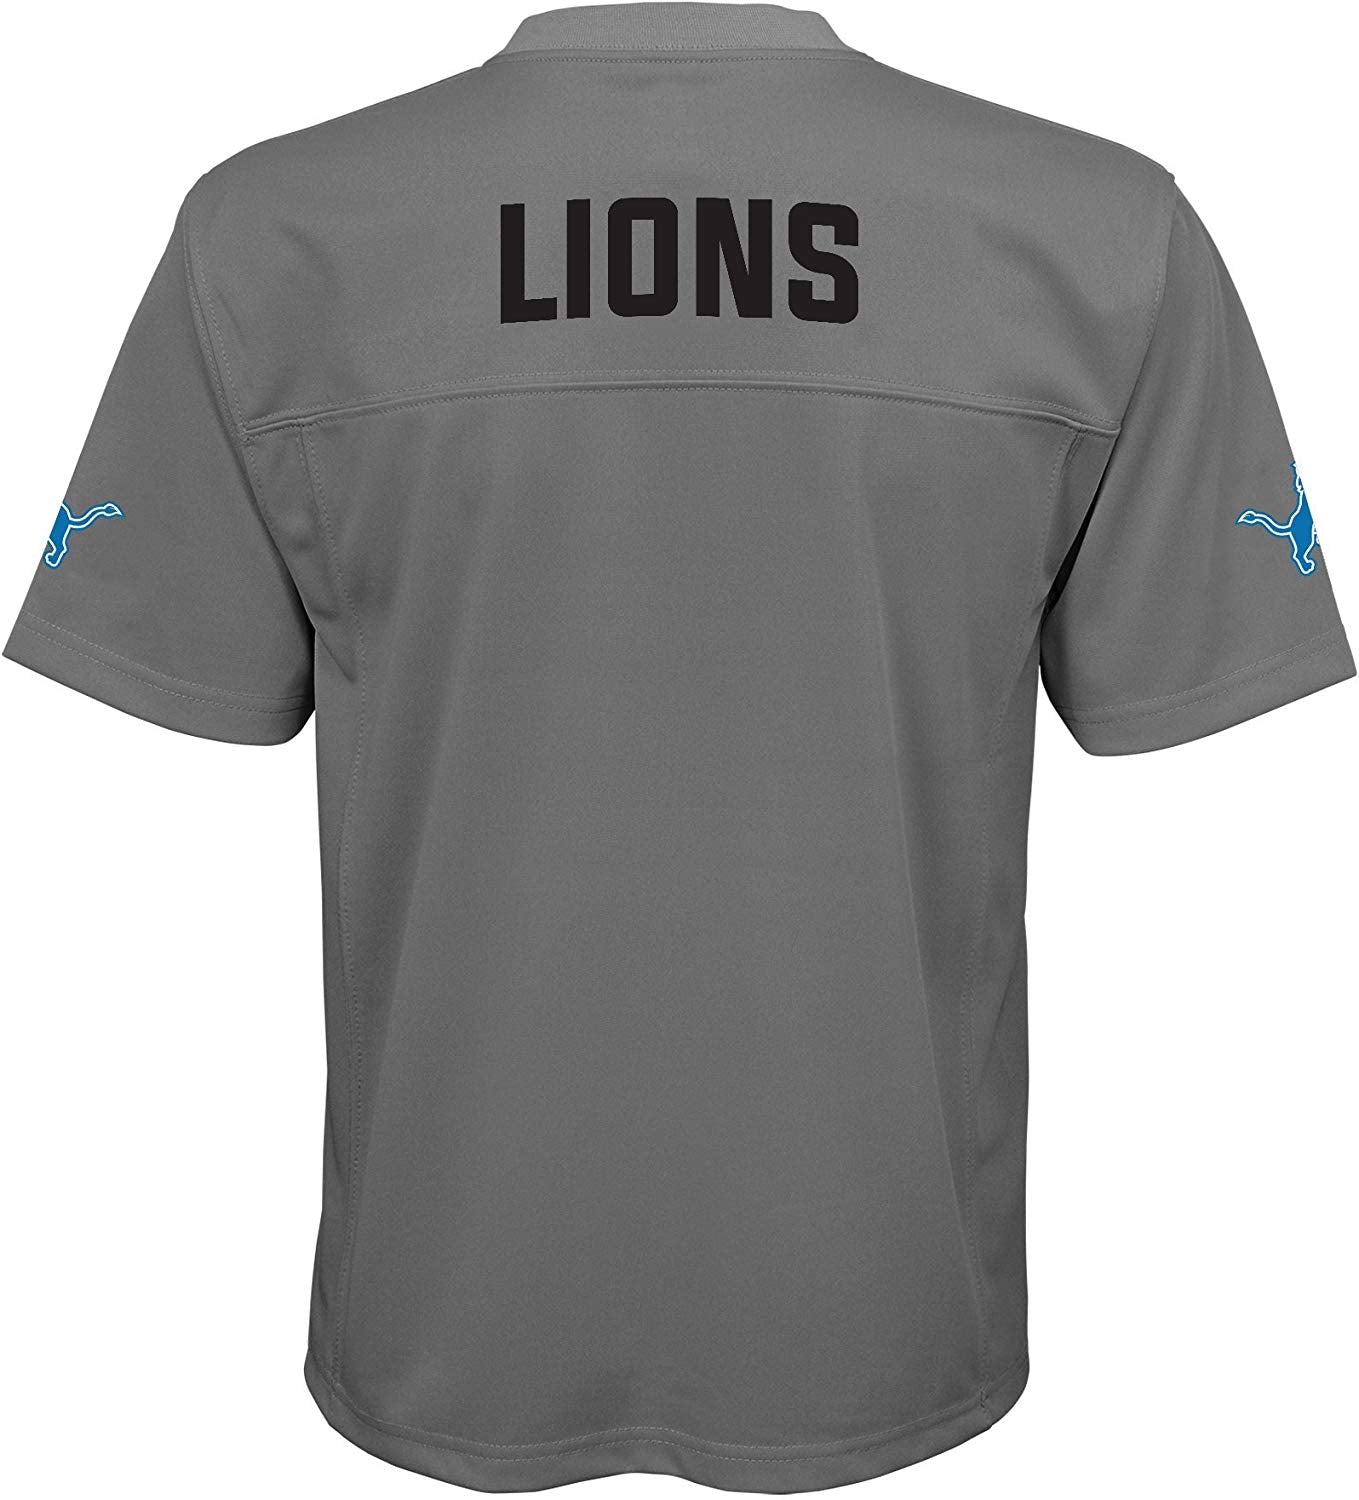 detroit lions color rush jerseys for sale